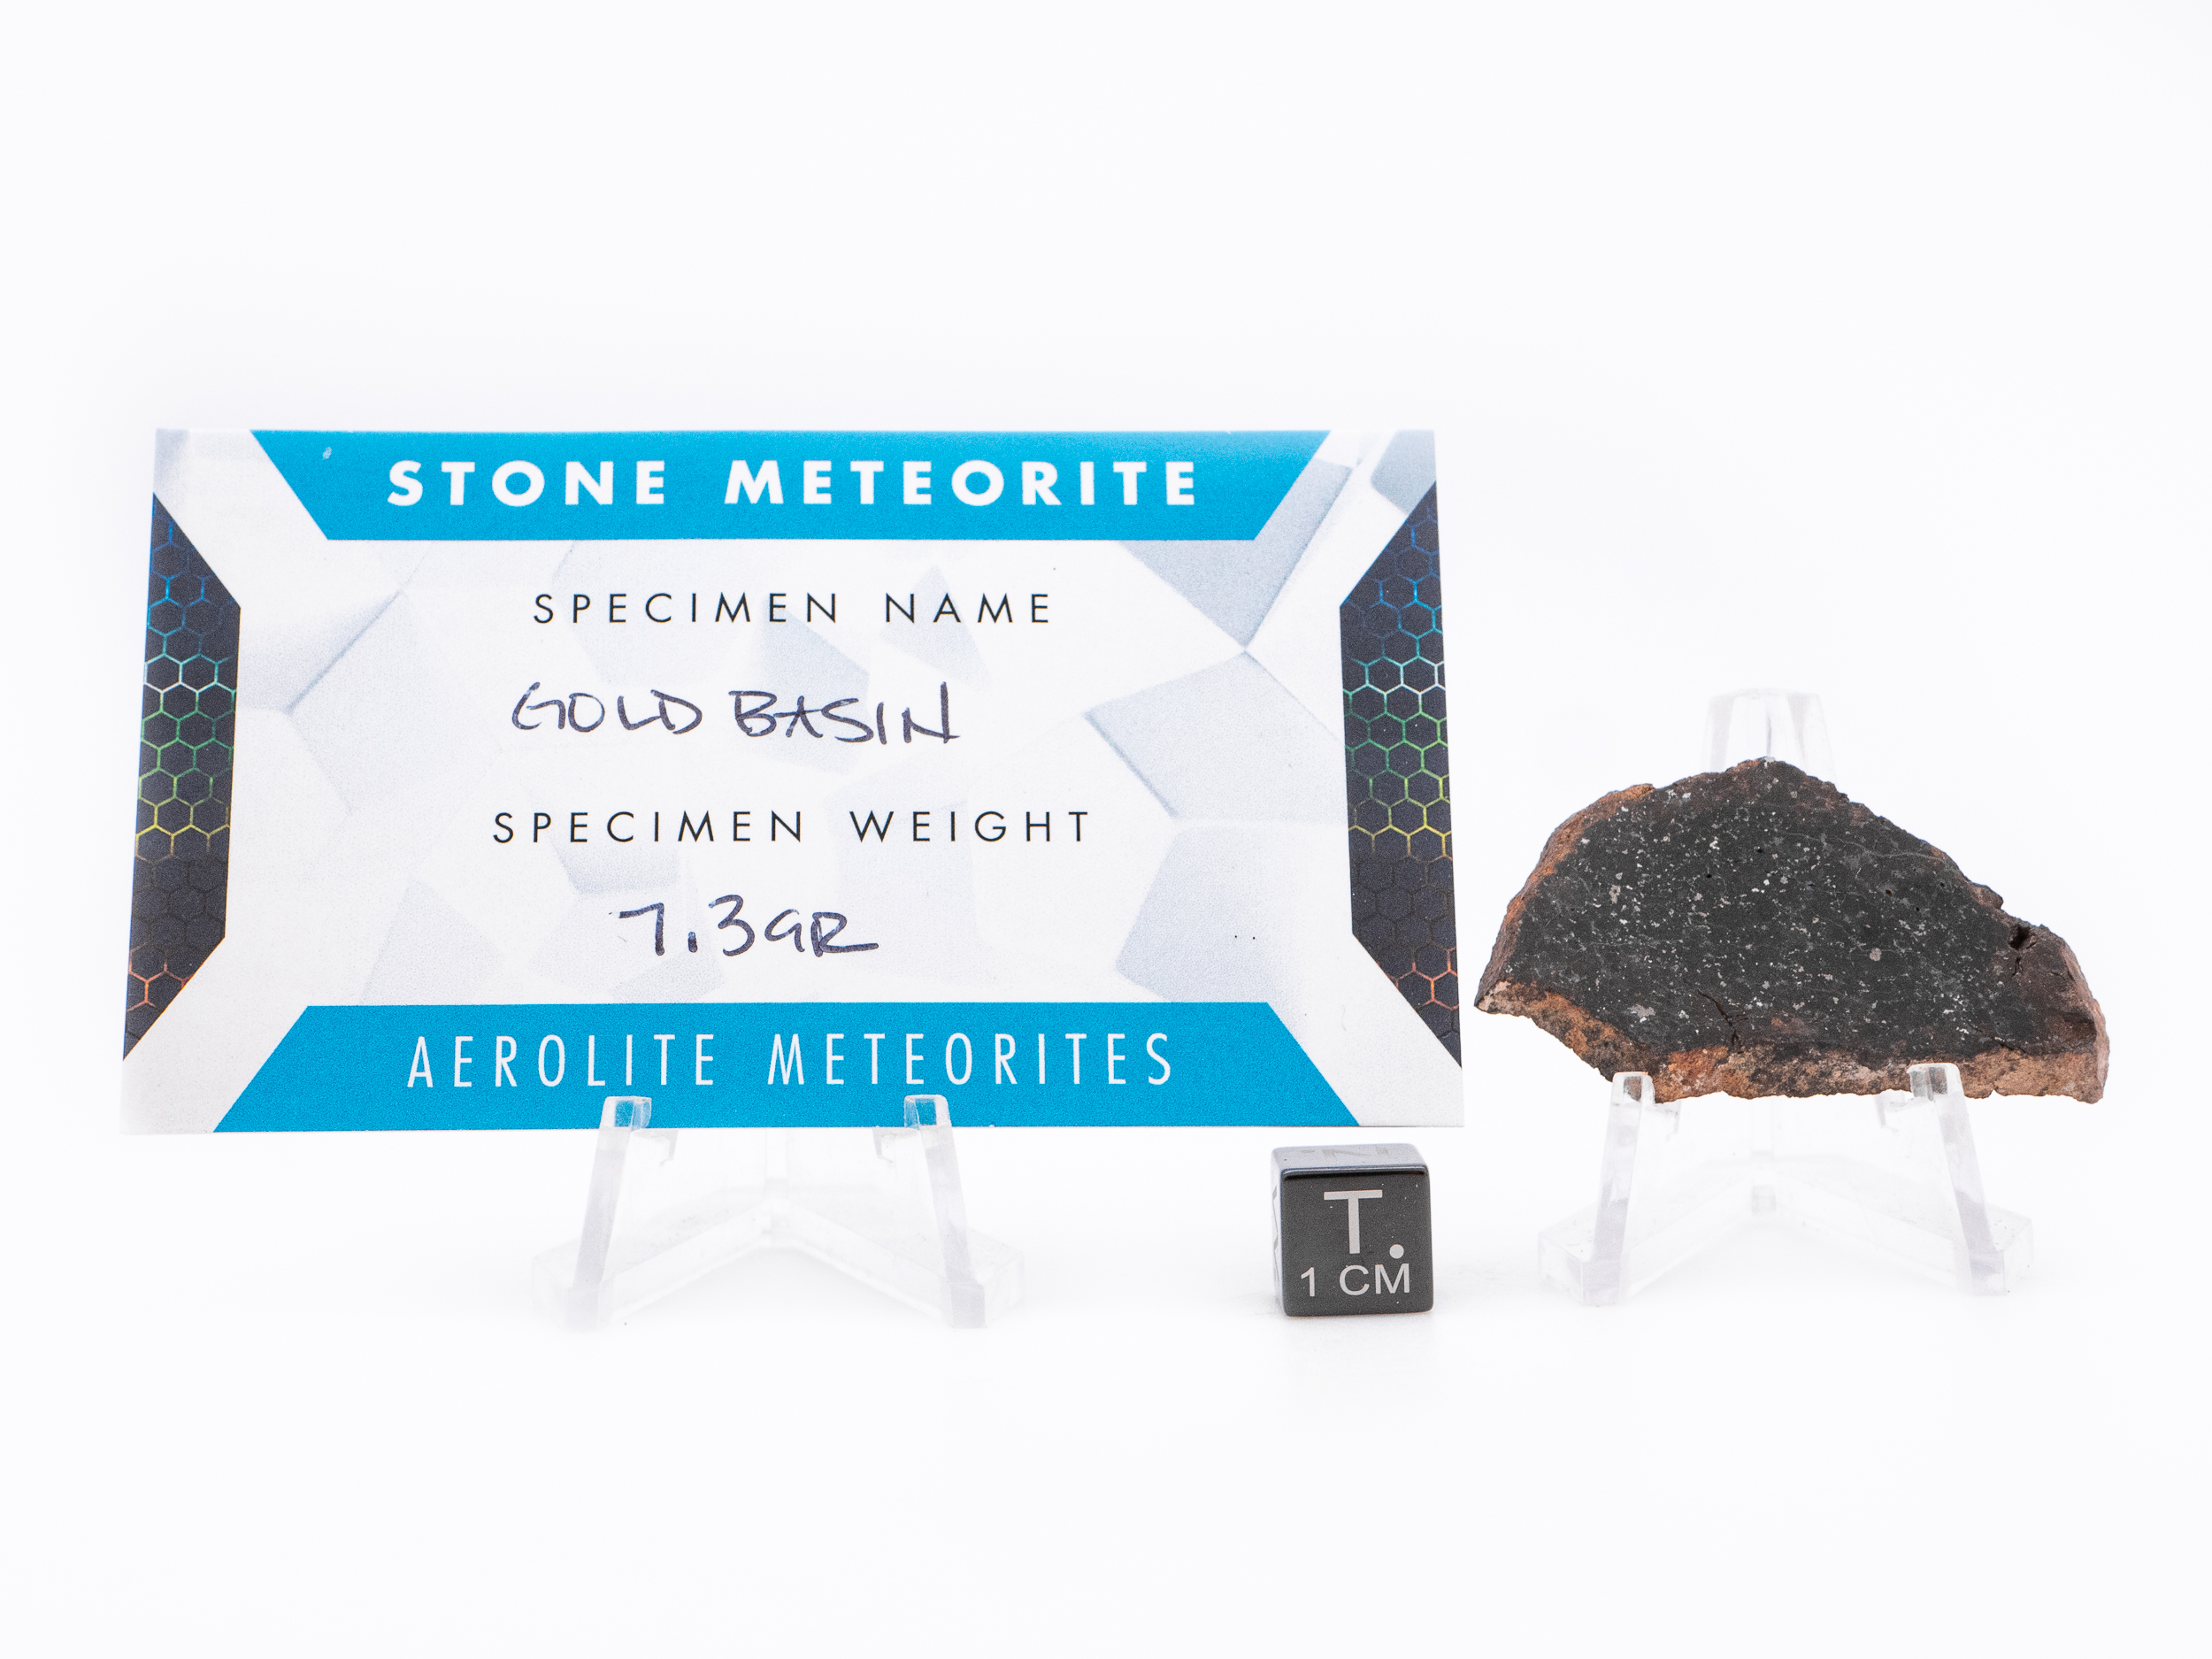 Gold Basin 7.3g – Aerolite Meteorites